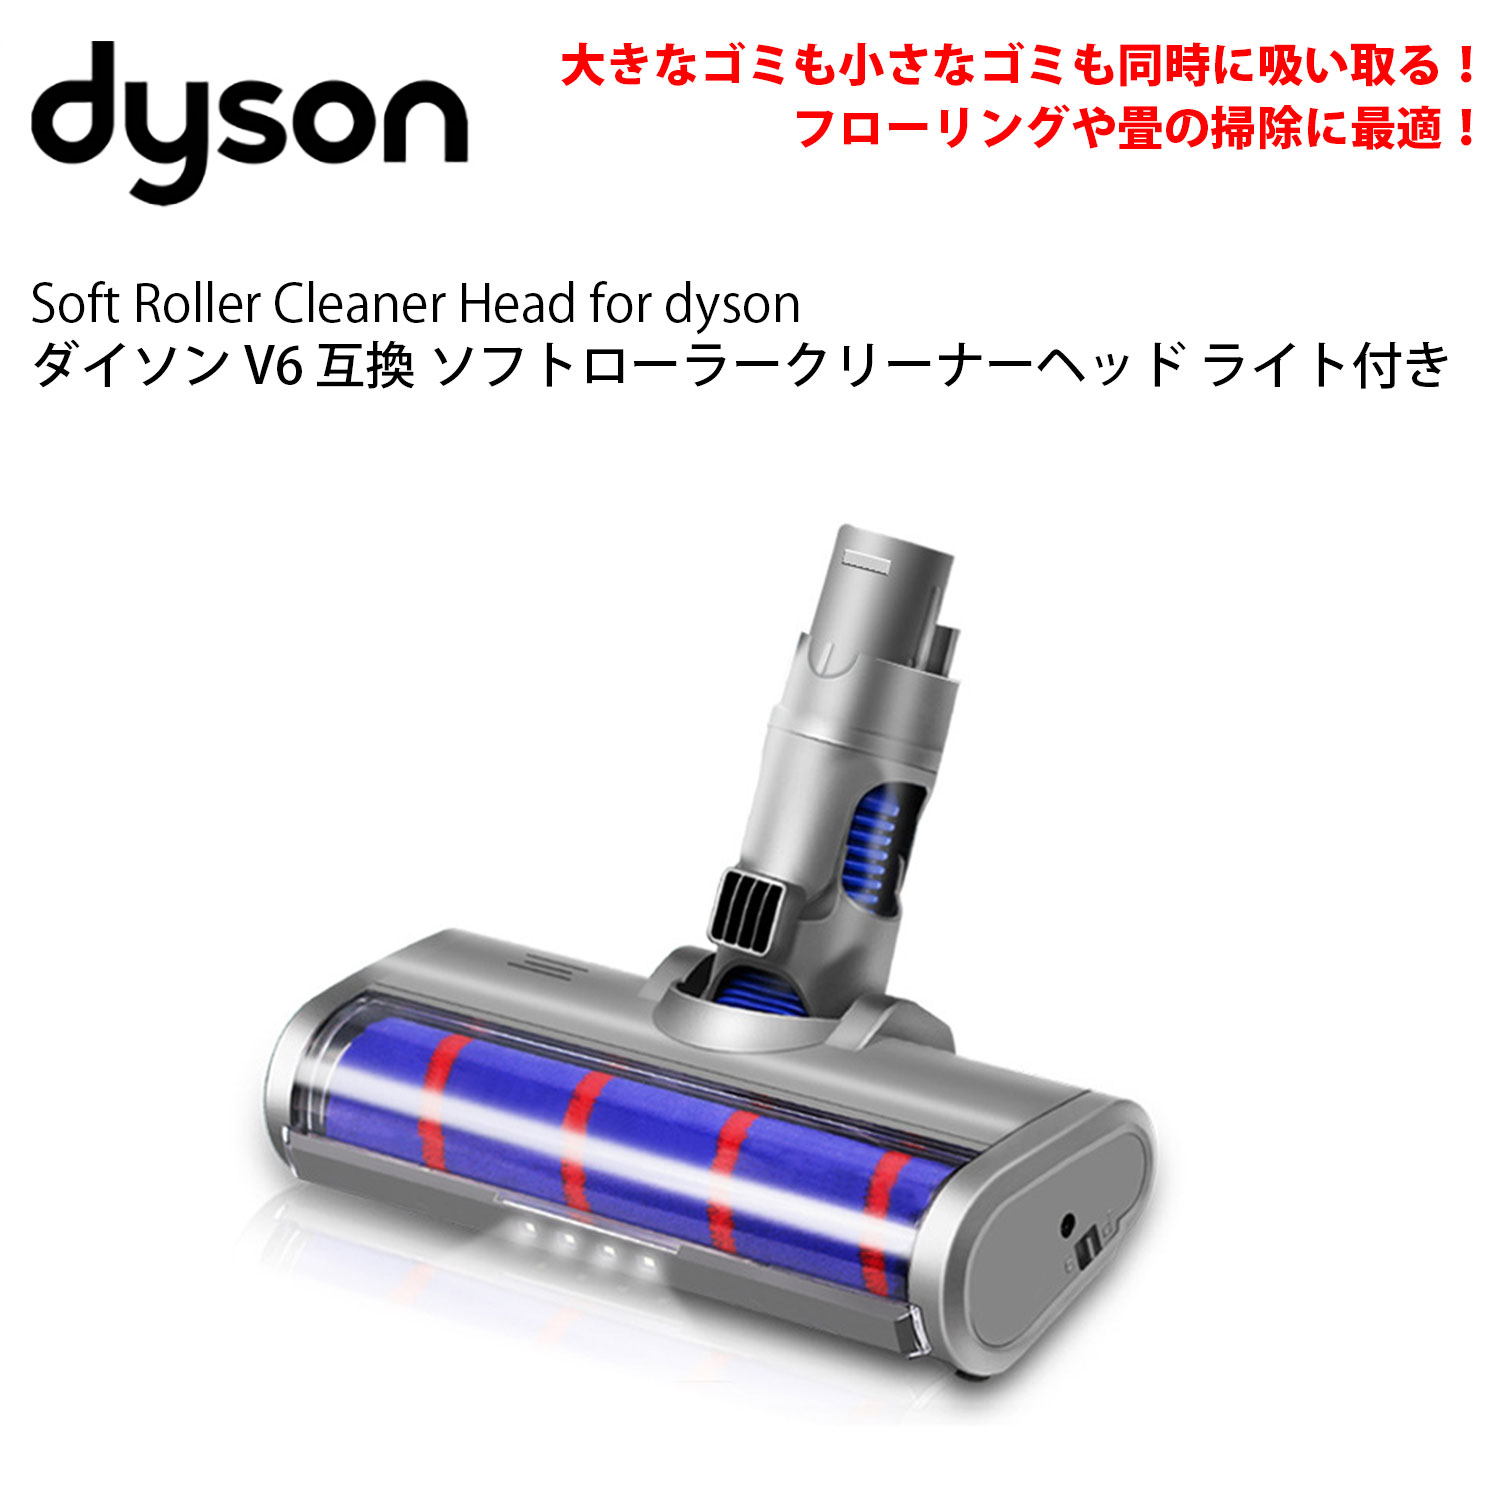 ダイソン v6 互換 LED ソフトローラークリーナーヘッド dyson dc61